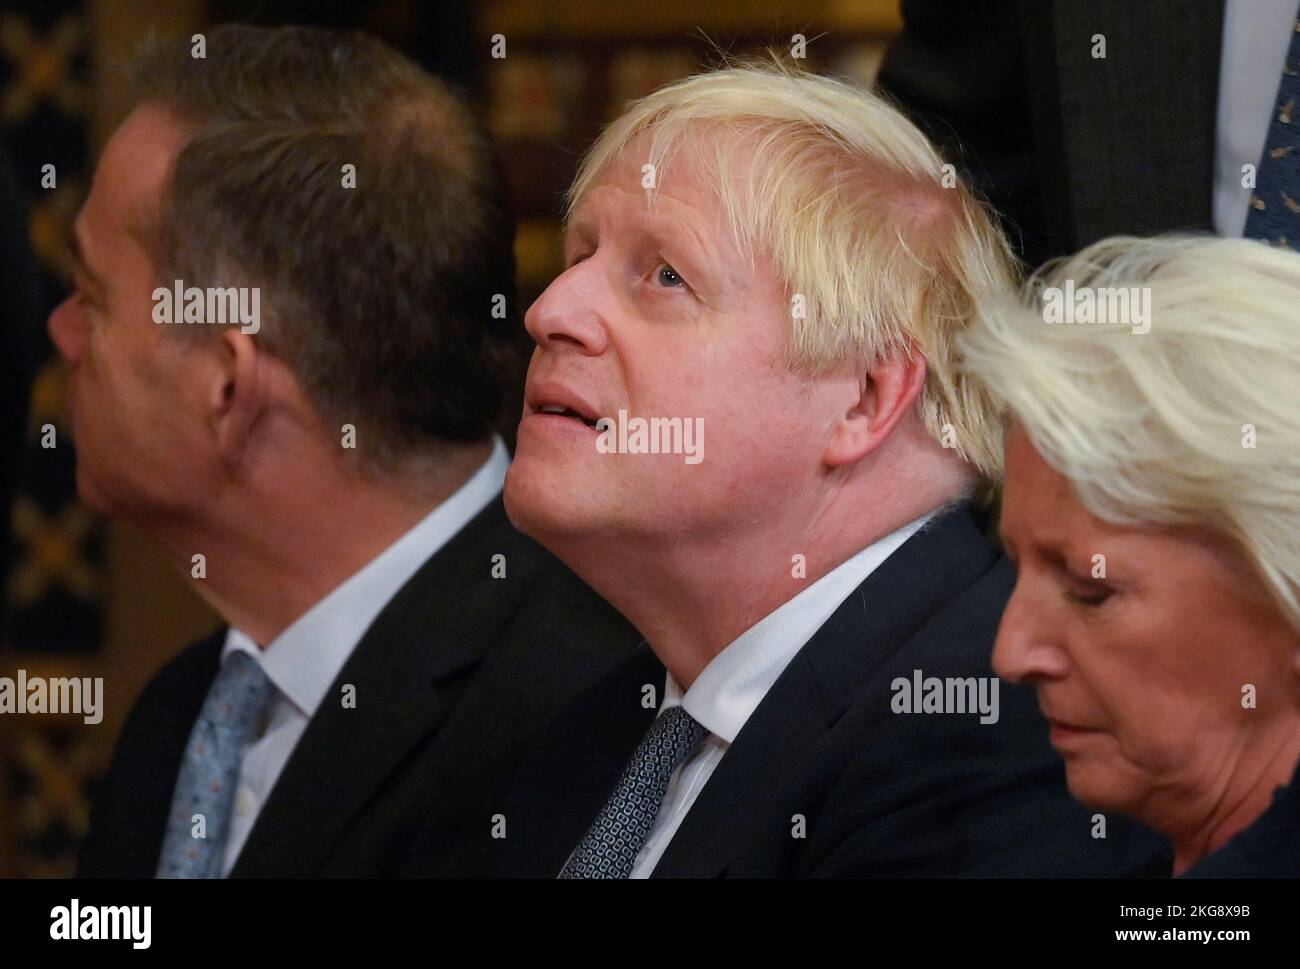 El ex primer ministro Boris Johnson, delante del presidente Cyril Ramaphosa de Sudáfrica, se dirigió a parlamentarios y compañeros en la Royal Gallery del Palacio de Westminster en Londres, como parte de su visita de Estado al Reino Unido. Fecha de la foto: Martes 22 de noviembre de 2022. Foto de stock